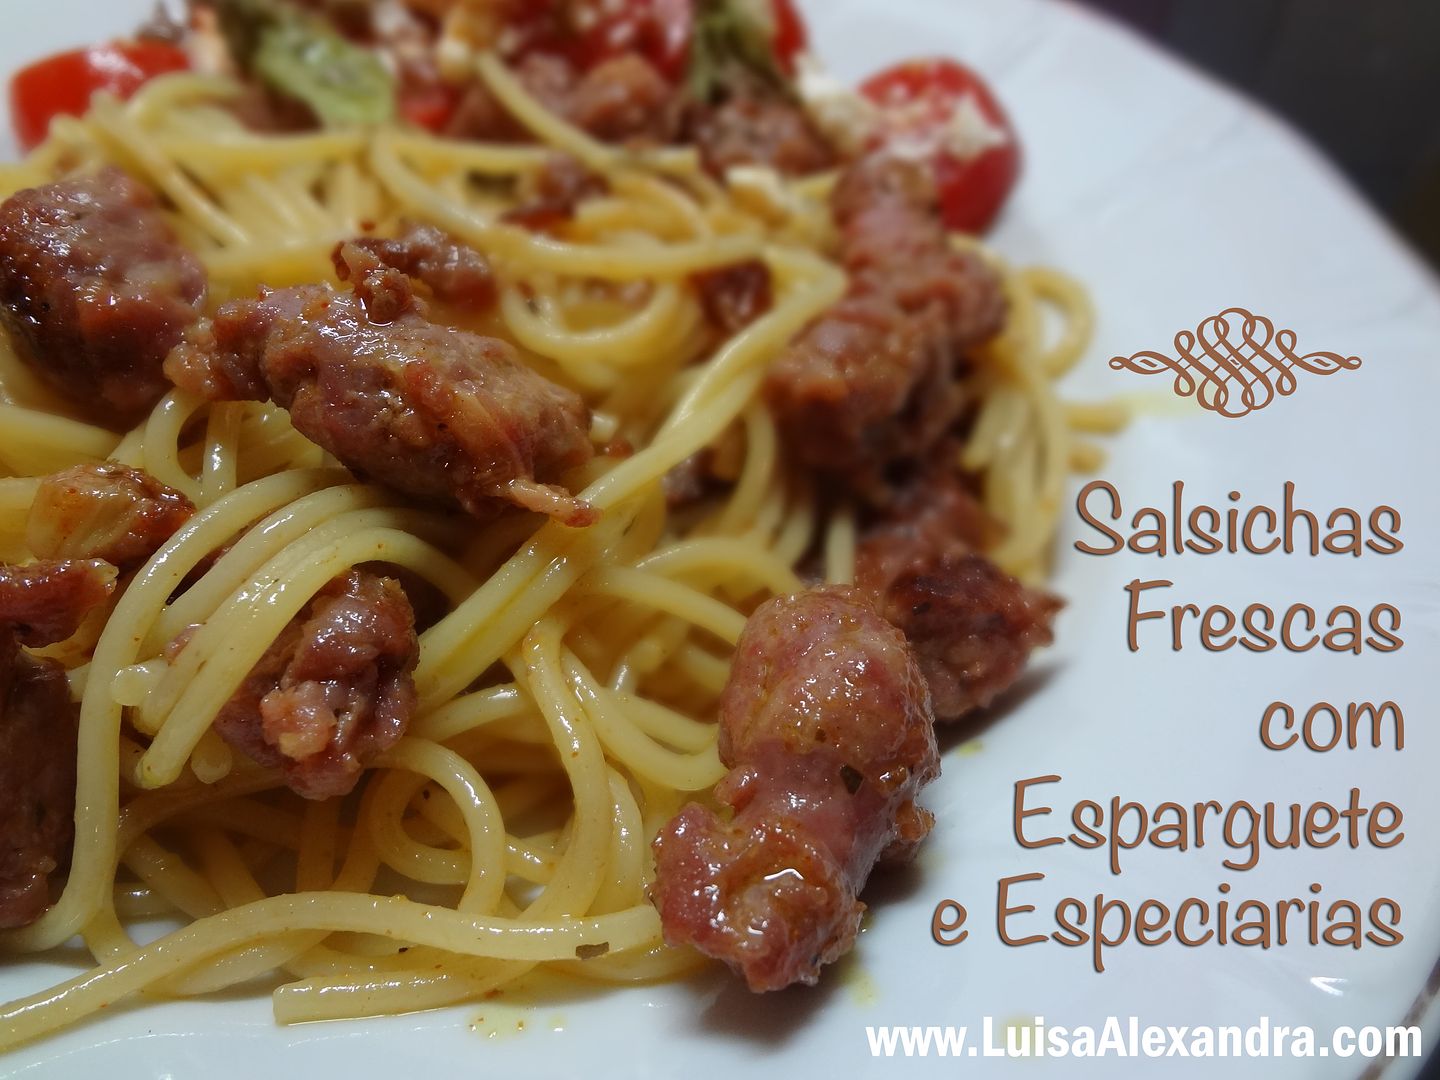 Salsichas Frescas com Esparguete e Especiarias photo DSC06455.jpg